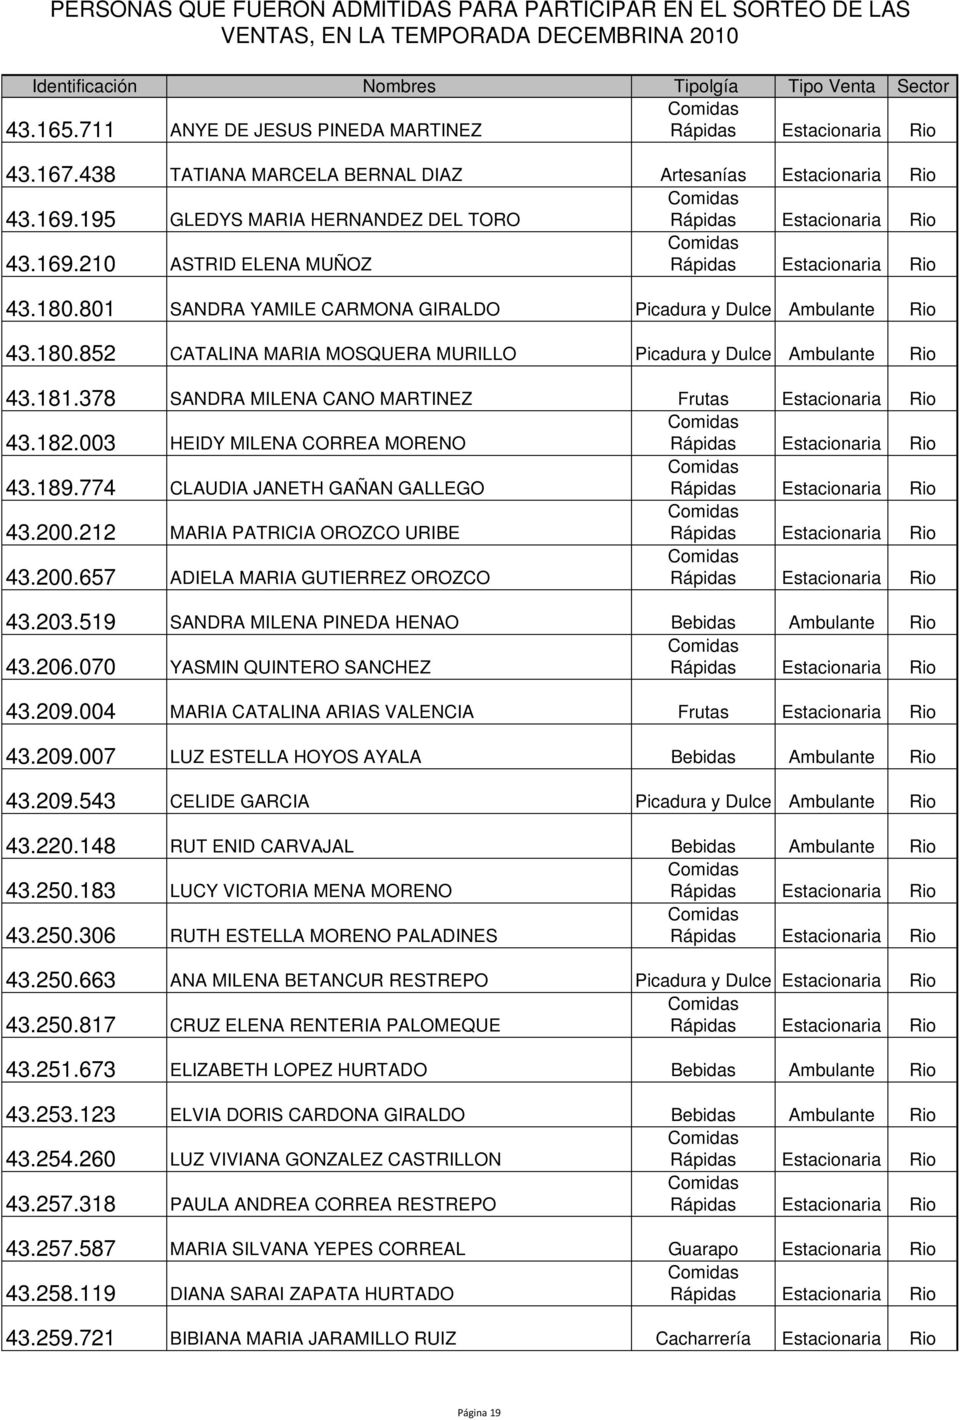 378 SANDRA MILENA CANO MARTINEZ Frutas Estacionaria Rio 43.182.003 HEIDY MILENA CORREA MORENO 43.189.774 CLAUDIA JANETH GAÑAN GALLEGO 43.200.212 MARIA PATRICIA OROZCO URIBE 43.200.657 ADIELA MARIA GUTIERREZ OROZCO 43.